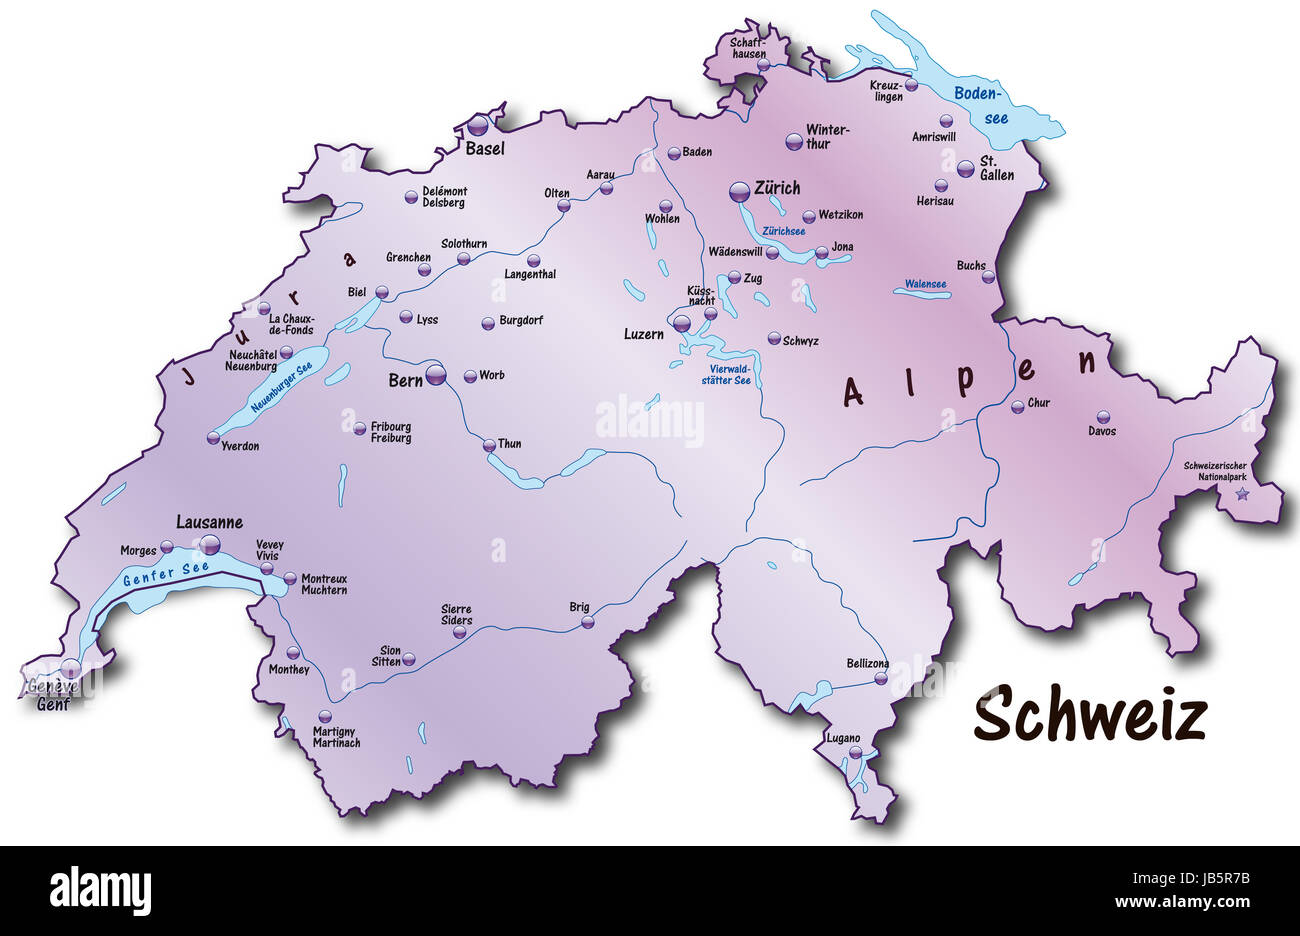 Das schweiz. Швейцария на карте. Река Рона на карте Швейцарии. Аэропорты Швейцарии на карте. Берн на карте Швейцарии.